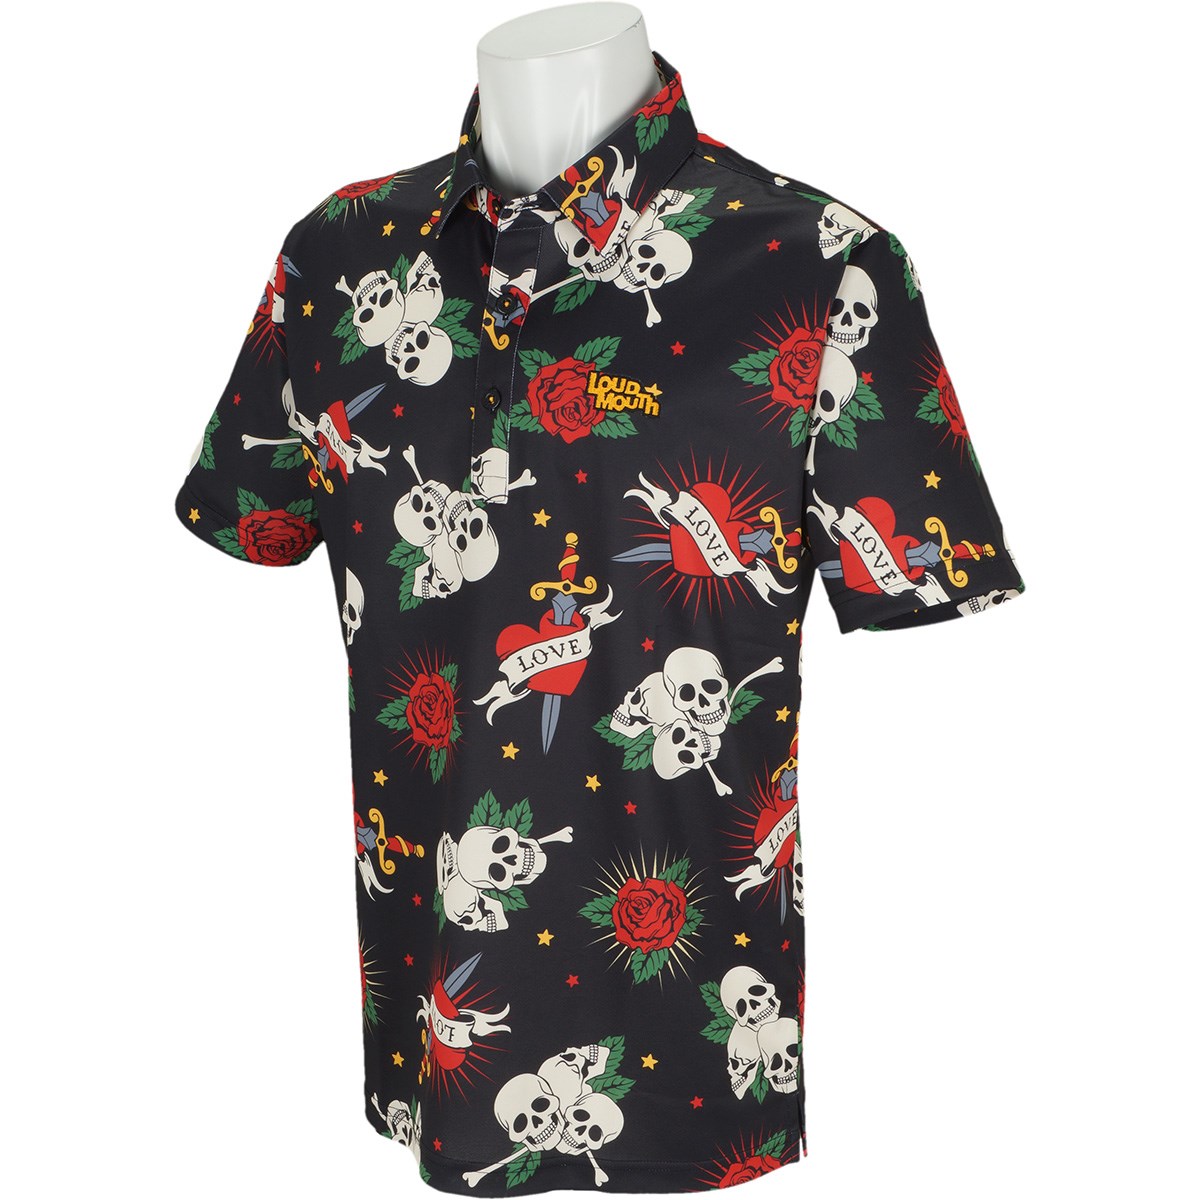 「ラウドマウスゴルフ(LOUDMLOUTH) 半袖ポロシャツ 」（ポロシャツ・シャツ）- ゴルフ(GOLF)用品のネット通販